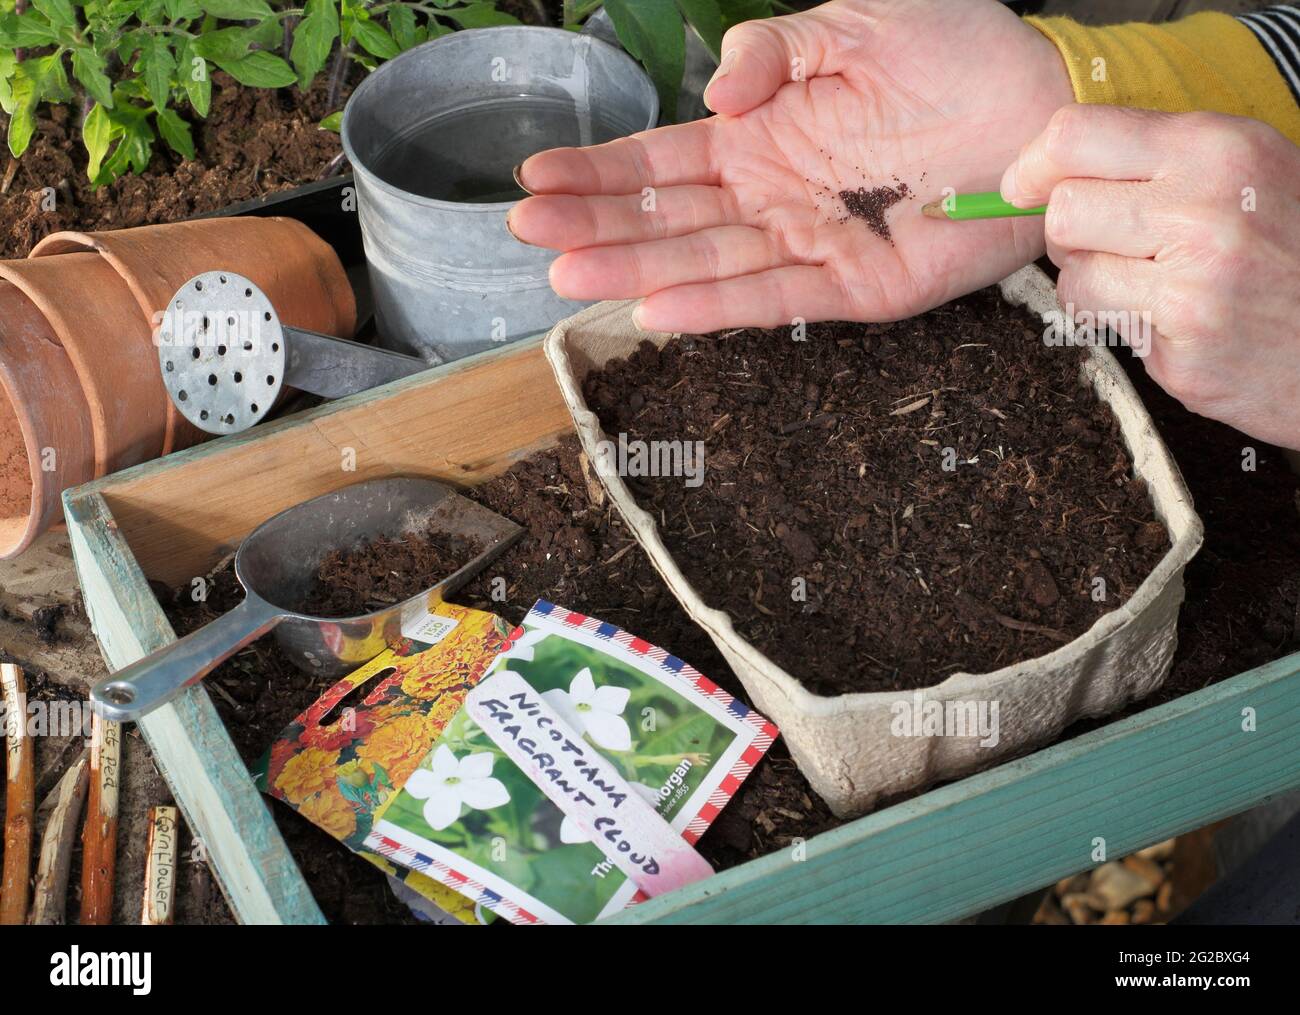 Sembrando semillas de flores diminutas - Nicotiana 'Nube Fragrante' - en una bandeja golpeando suavemente la mano con un lápiz para ayudar a espaciar las semillas. REINO UNIDO Foto de stock